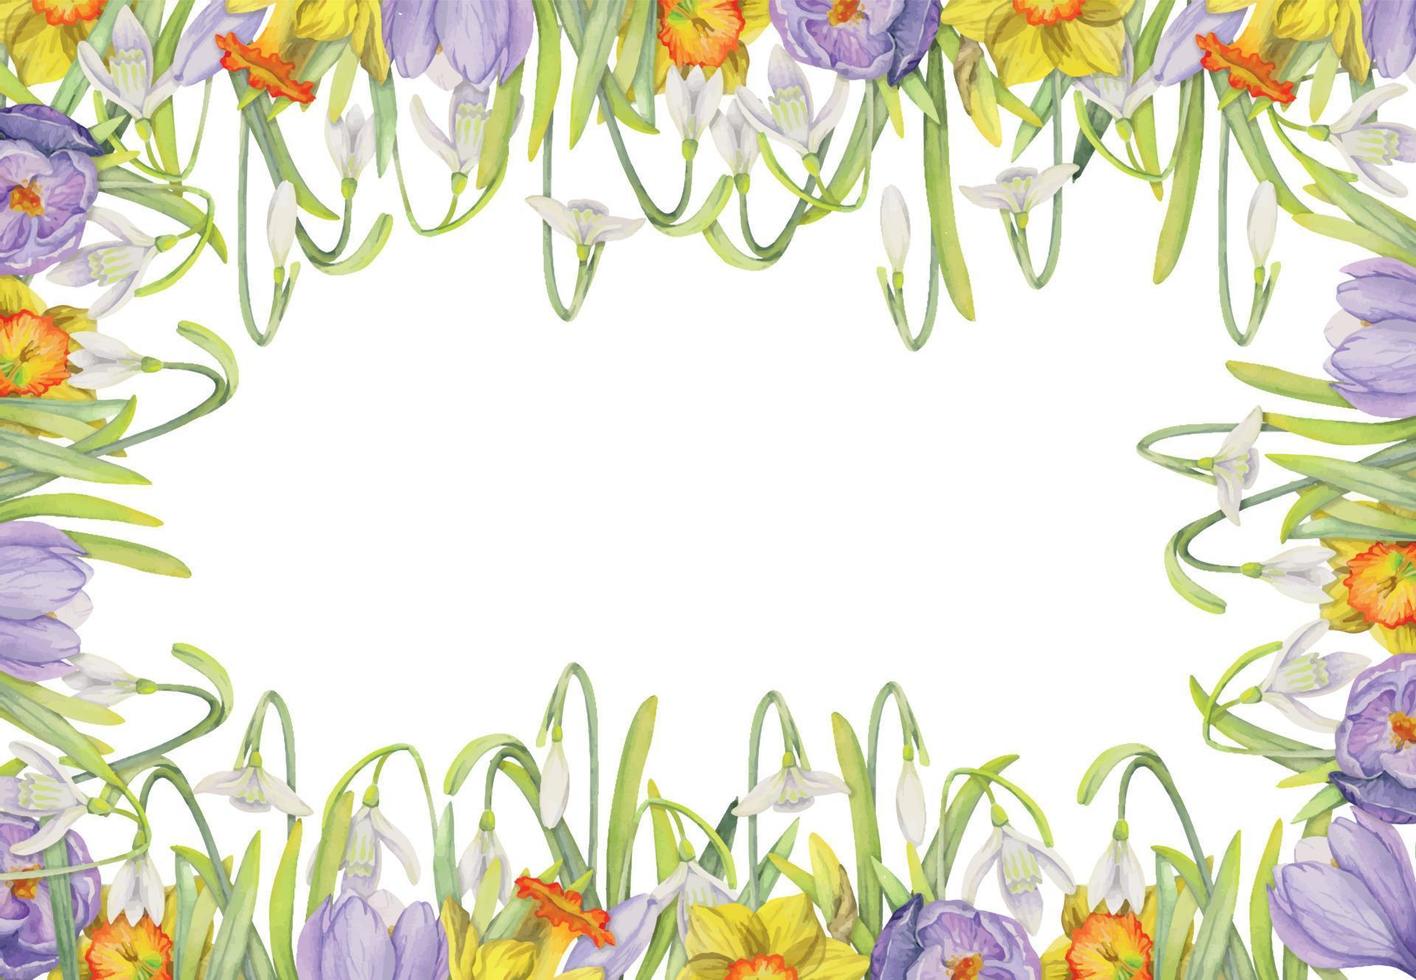 aquarell handgezeichneter quadratischer rahmen mit frühlingsblumen, krokus, schneeglöckchen, narzissen, blättern. isoliert auf weißem Hintergrund. design für einladungen, hochzeit, grußkarten, tapeten, druck, textil. vektor